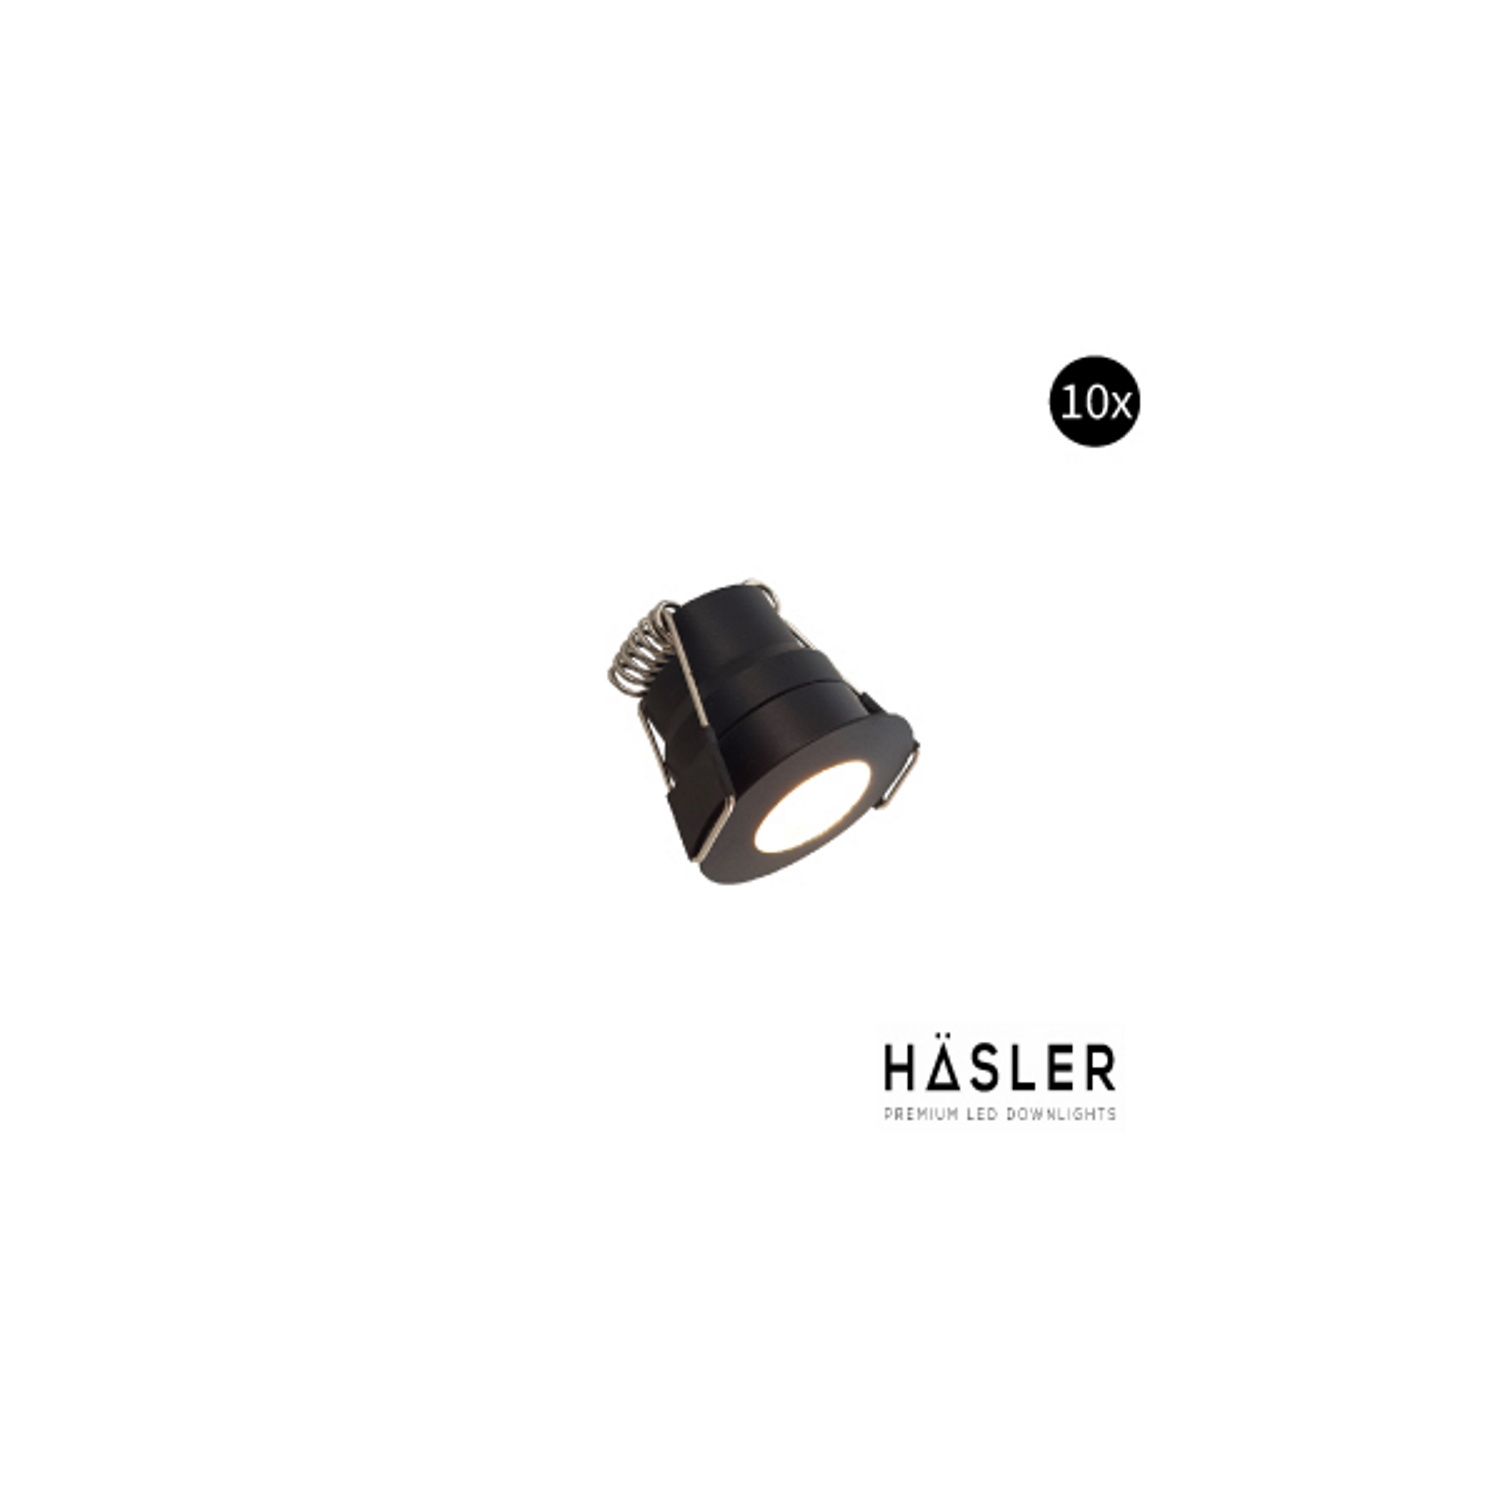 Hasler Inbouwspot Häsler Abruzzo Incl. Fase Aansnijding Dimbaar 3.4 cm 1.8 Watt Warm Wit Mat Zwart Set 10x - Set 2 Spots